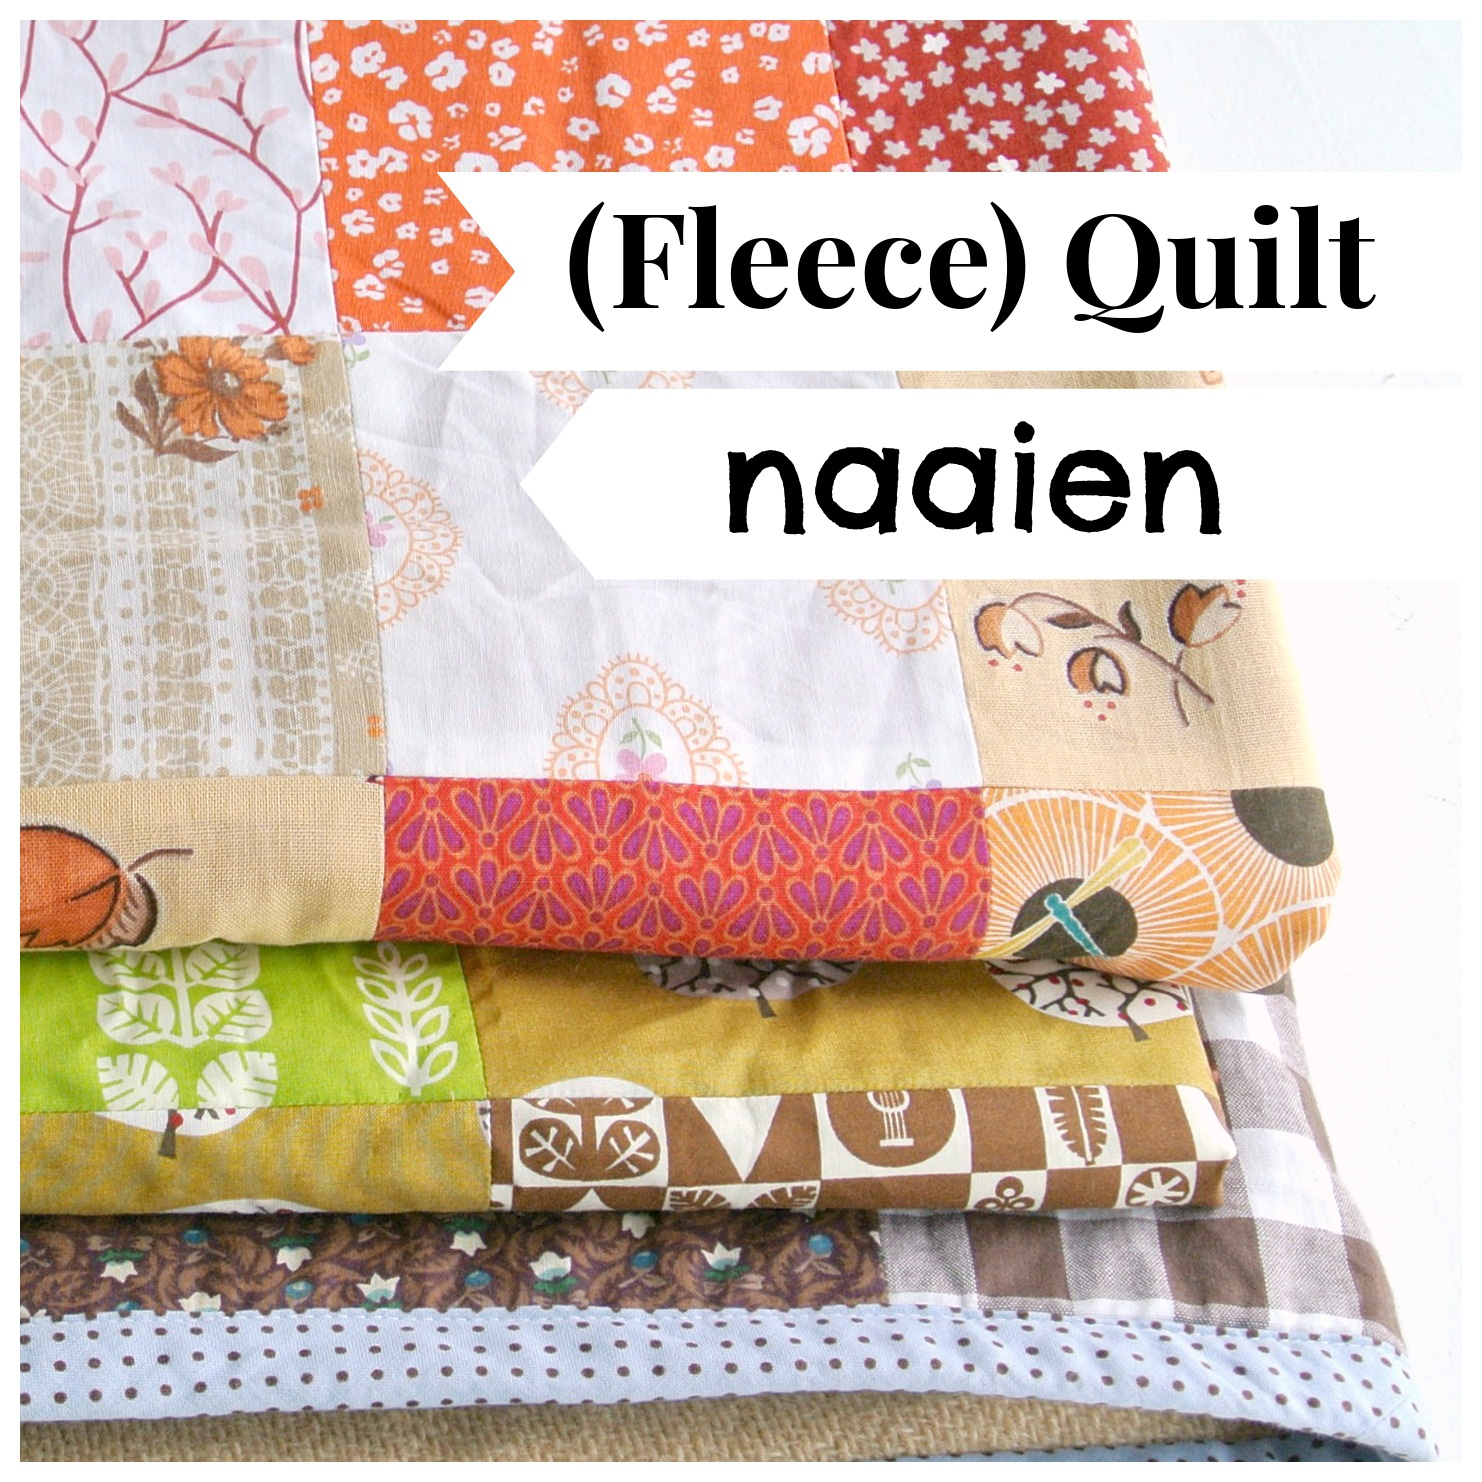 Fleece Quilt Naaien